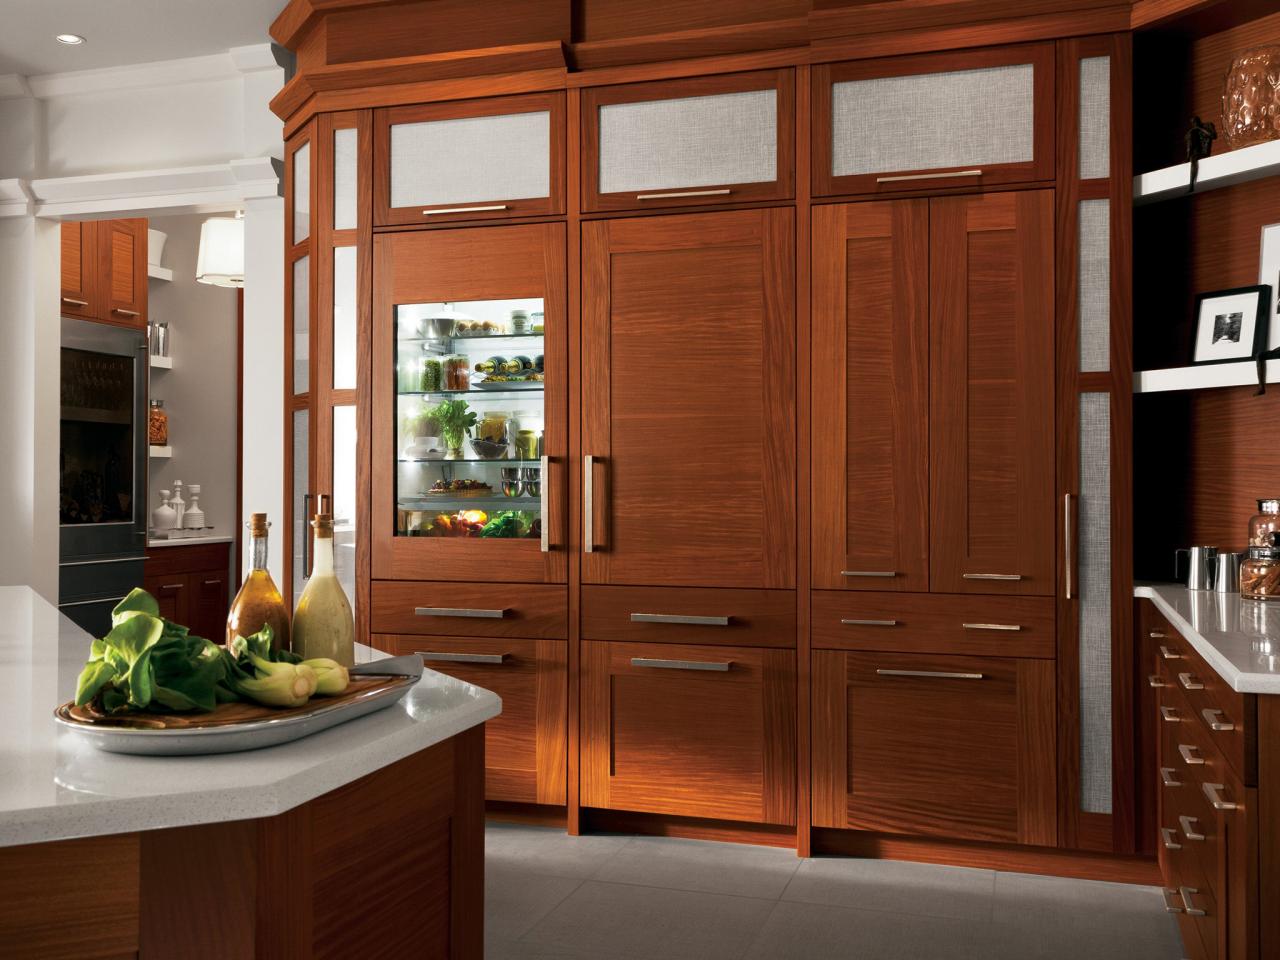 Alder kitchen cabinets